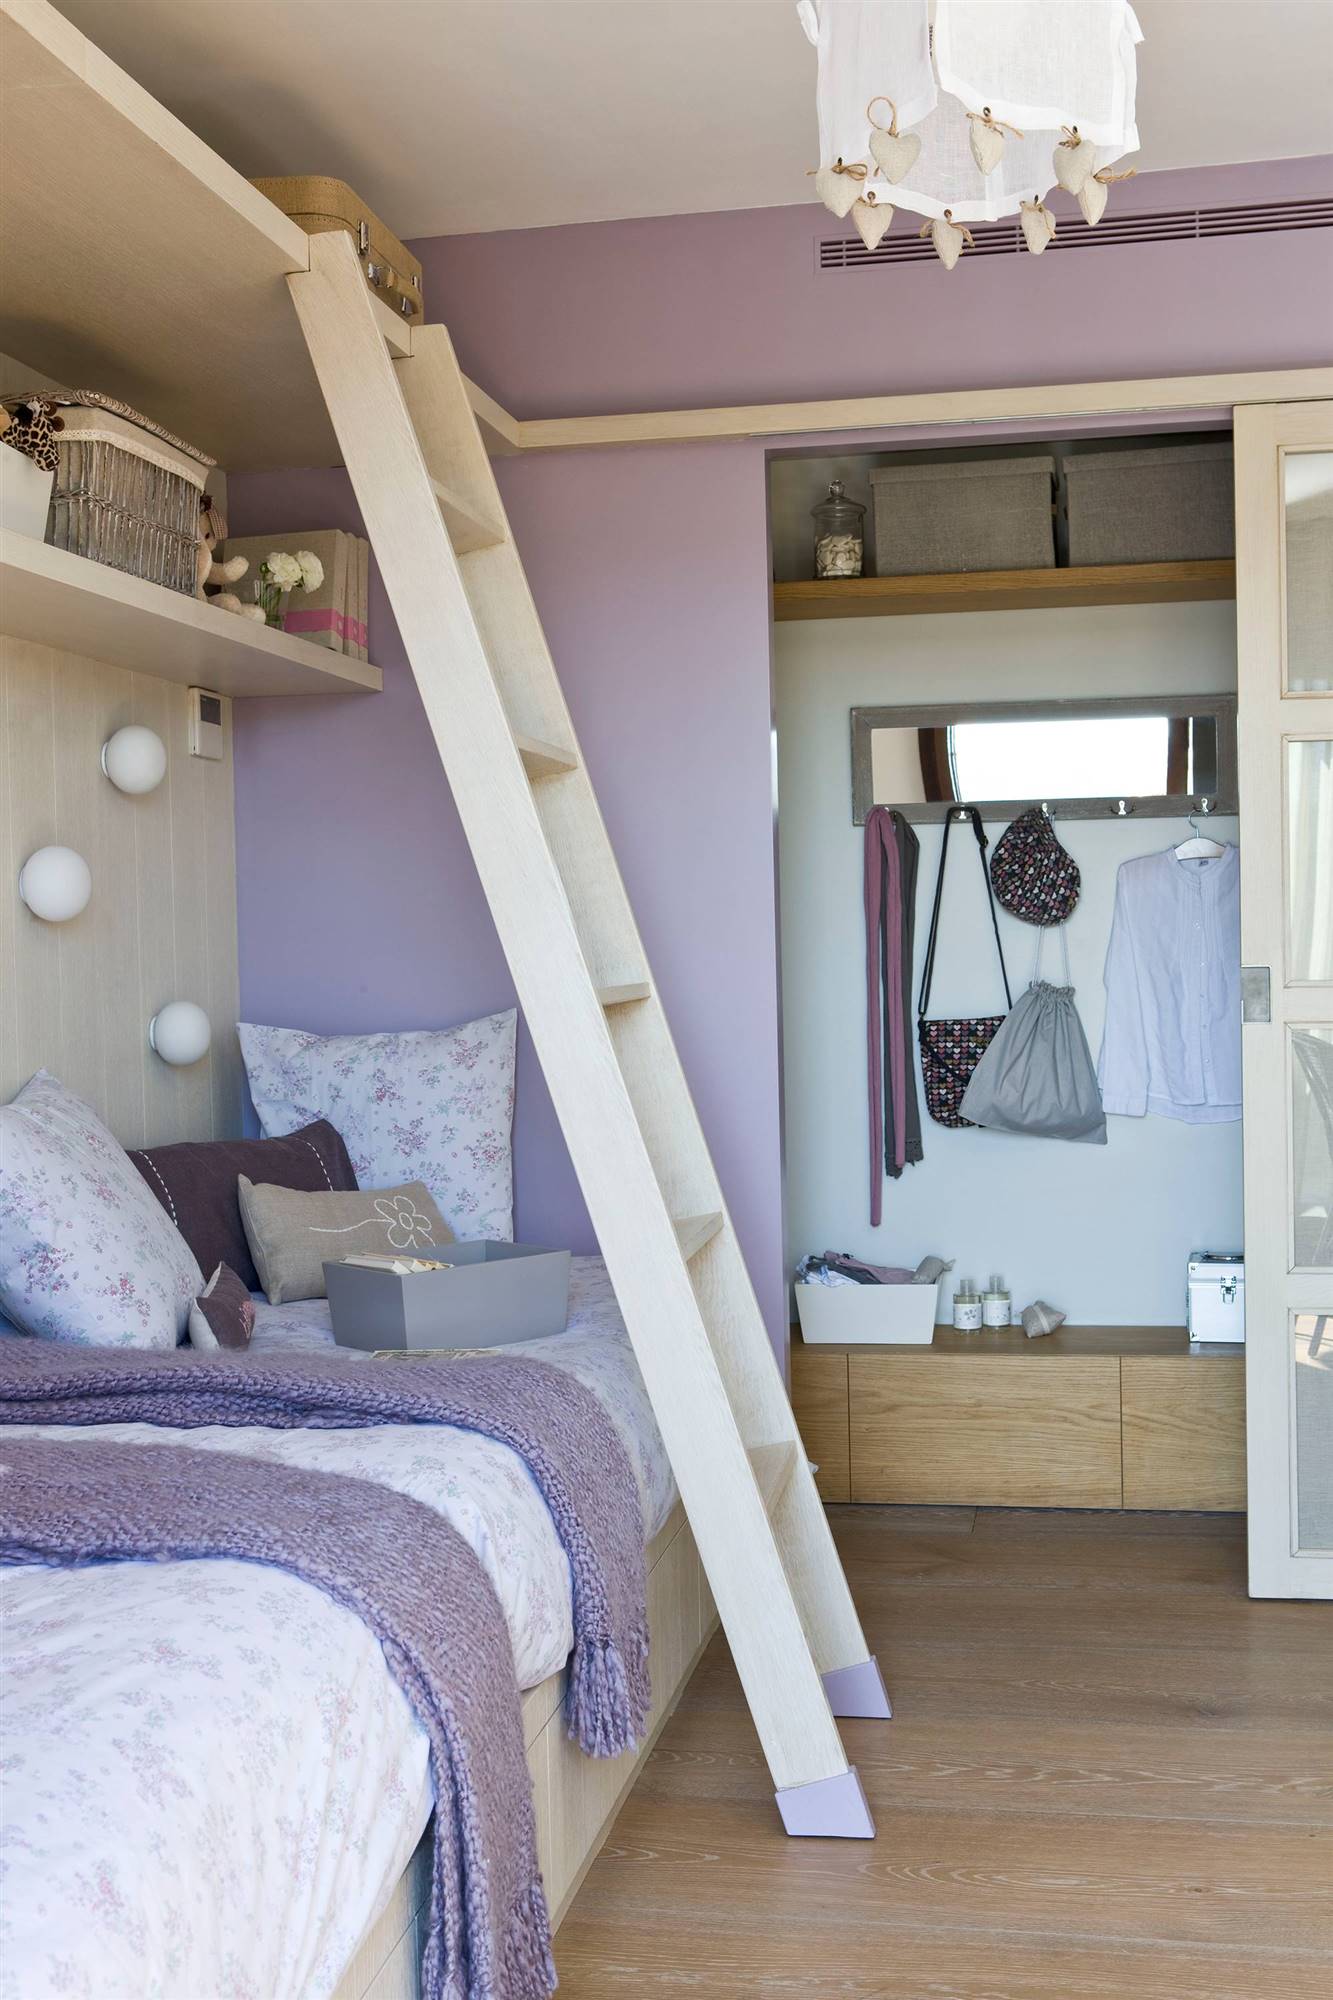 Habitación con cama nido, vestidor y paredes pintadas en color malva 00265962